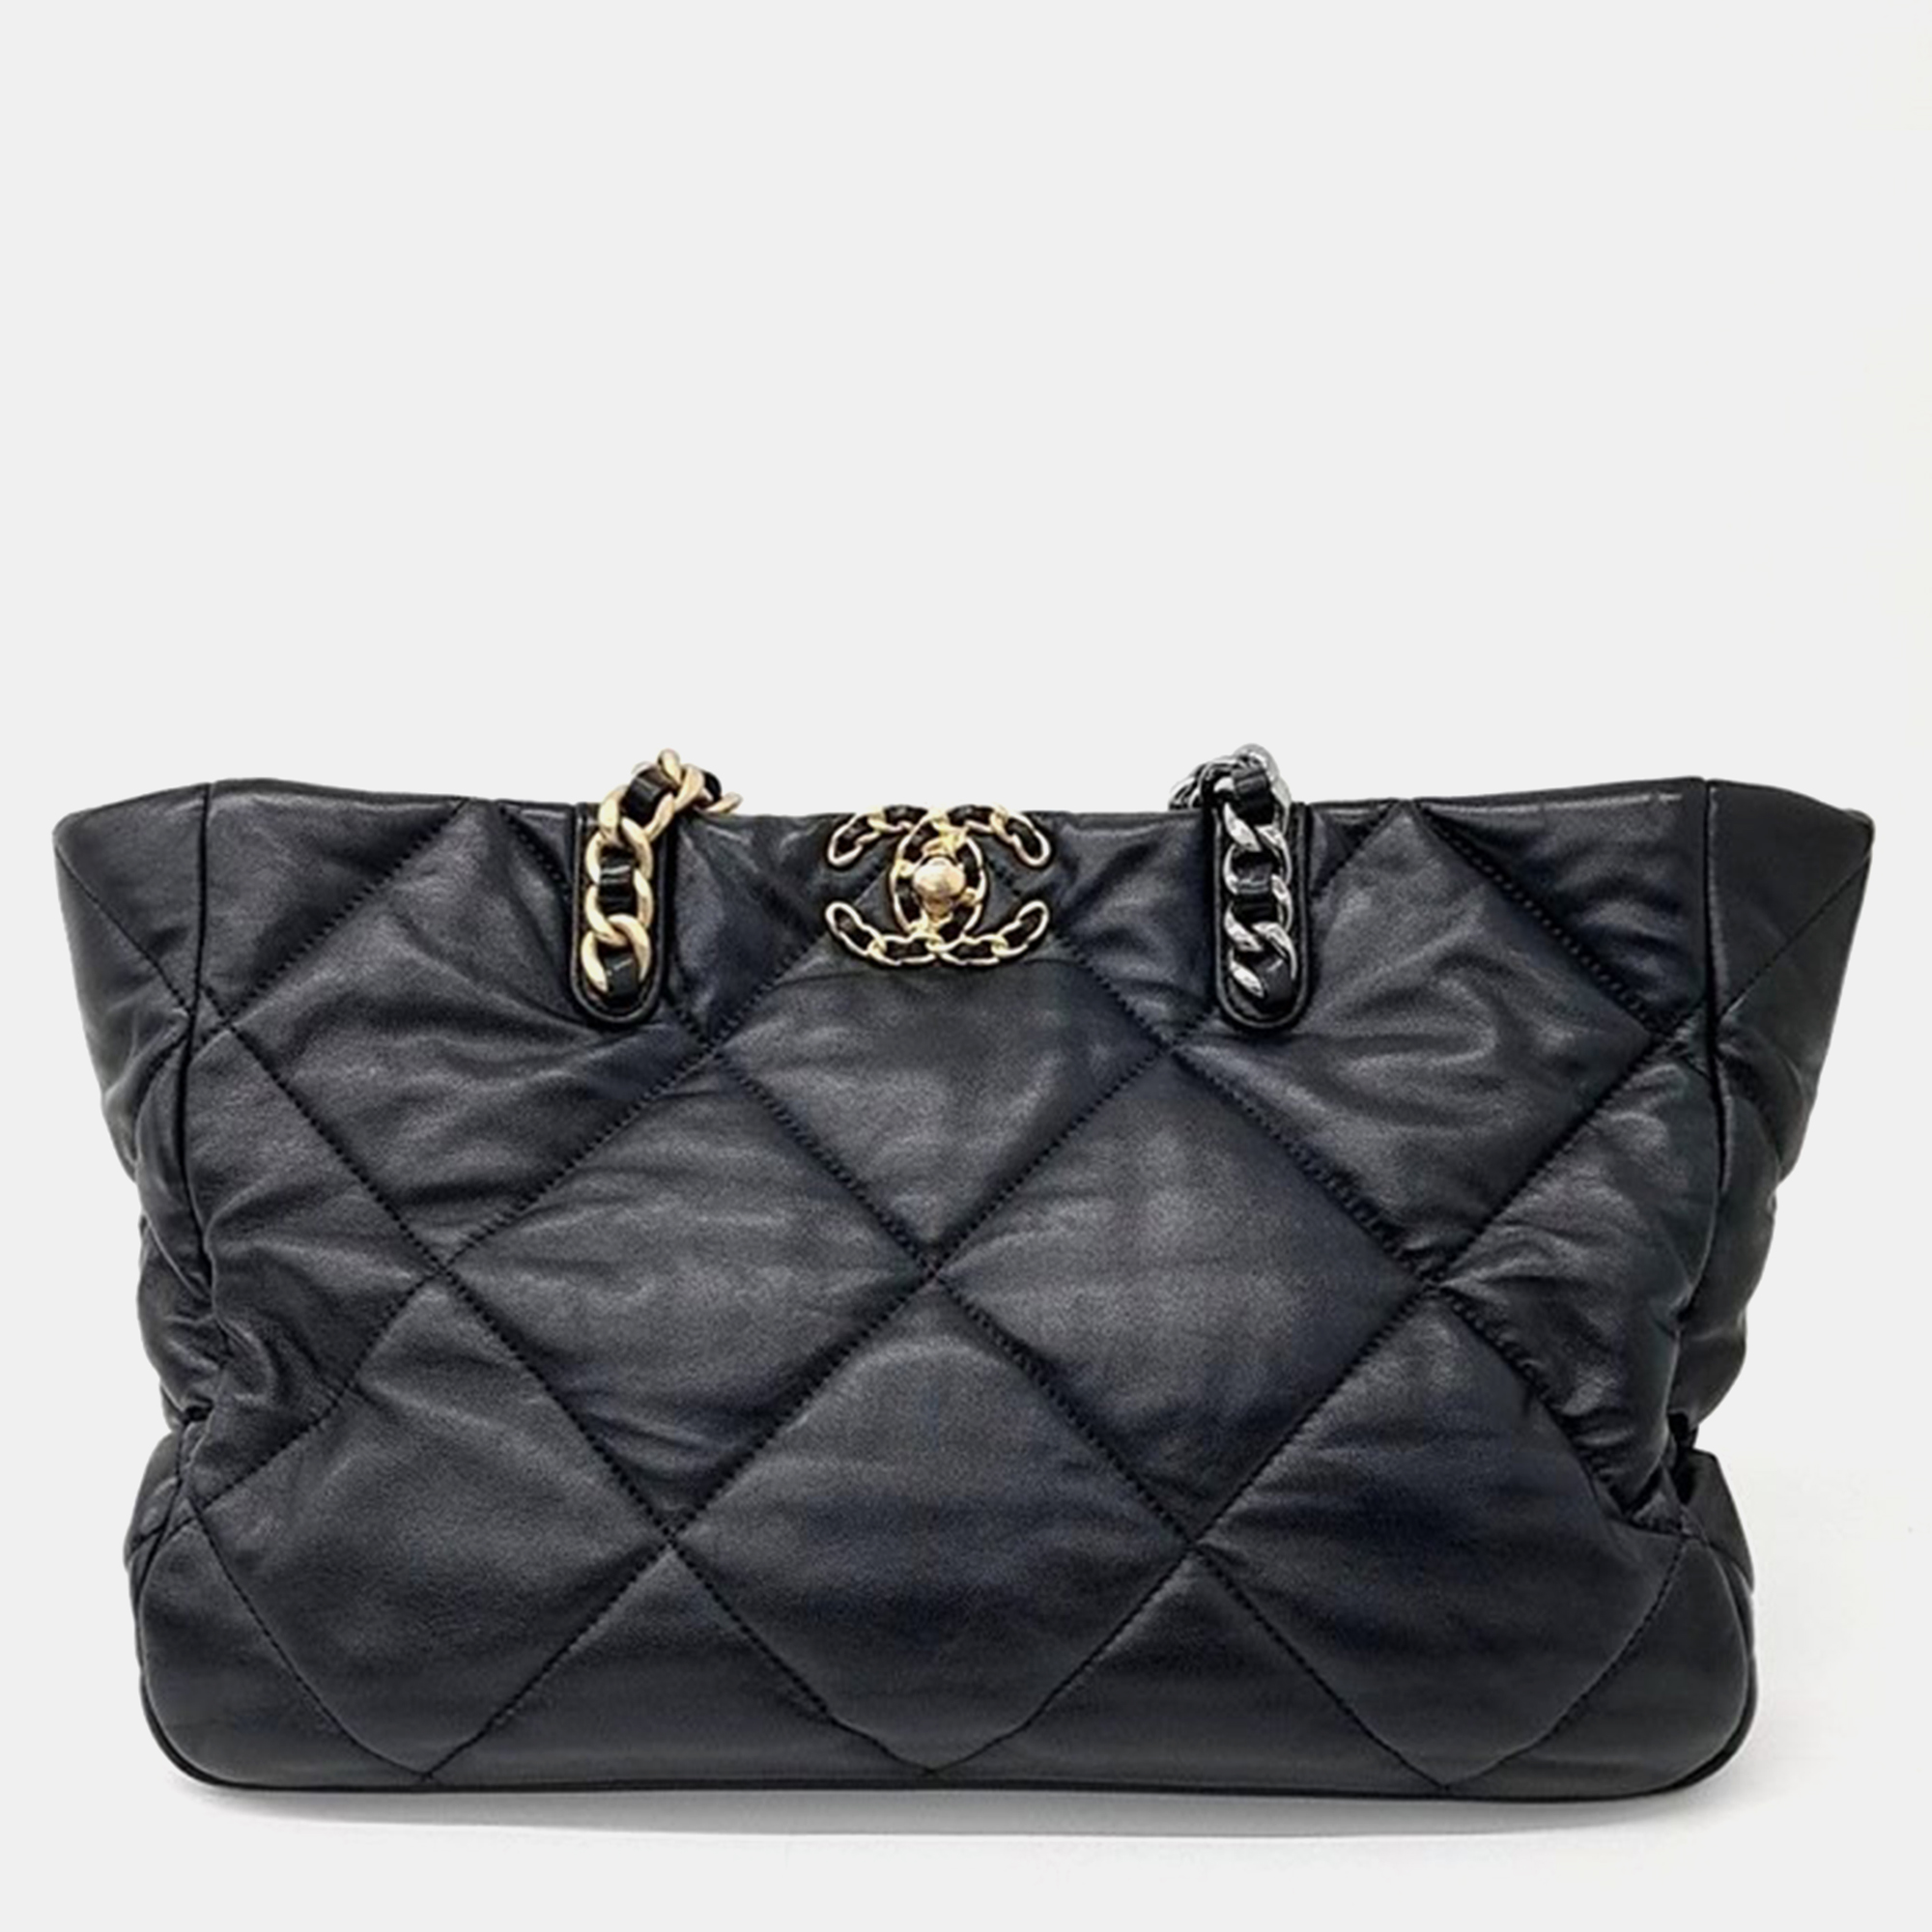 

Chanel 19 Chain Shoulder Bag, Black